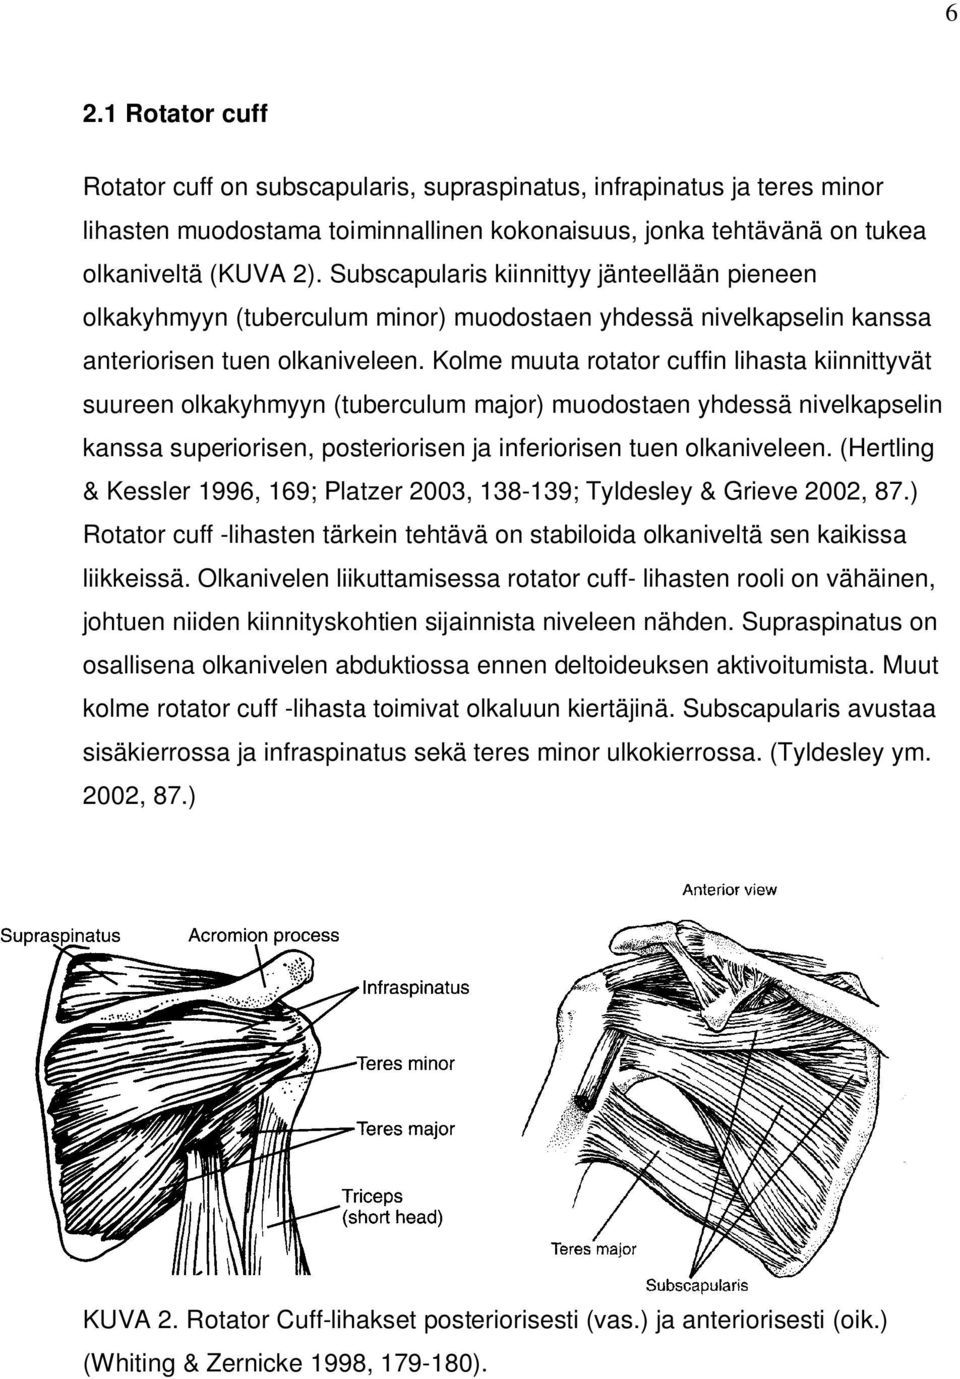 Kolme muuta rotator cuffin lihasta kiinnittyvät suureen olkakyhmyyn (tuberculum major) muodostaen yhdessä nivelkapselin kanssa superiorisen, posteriorisen ja inferiorisen tuen olkaniveleen.